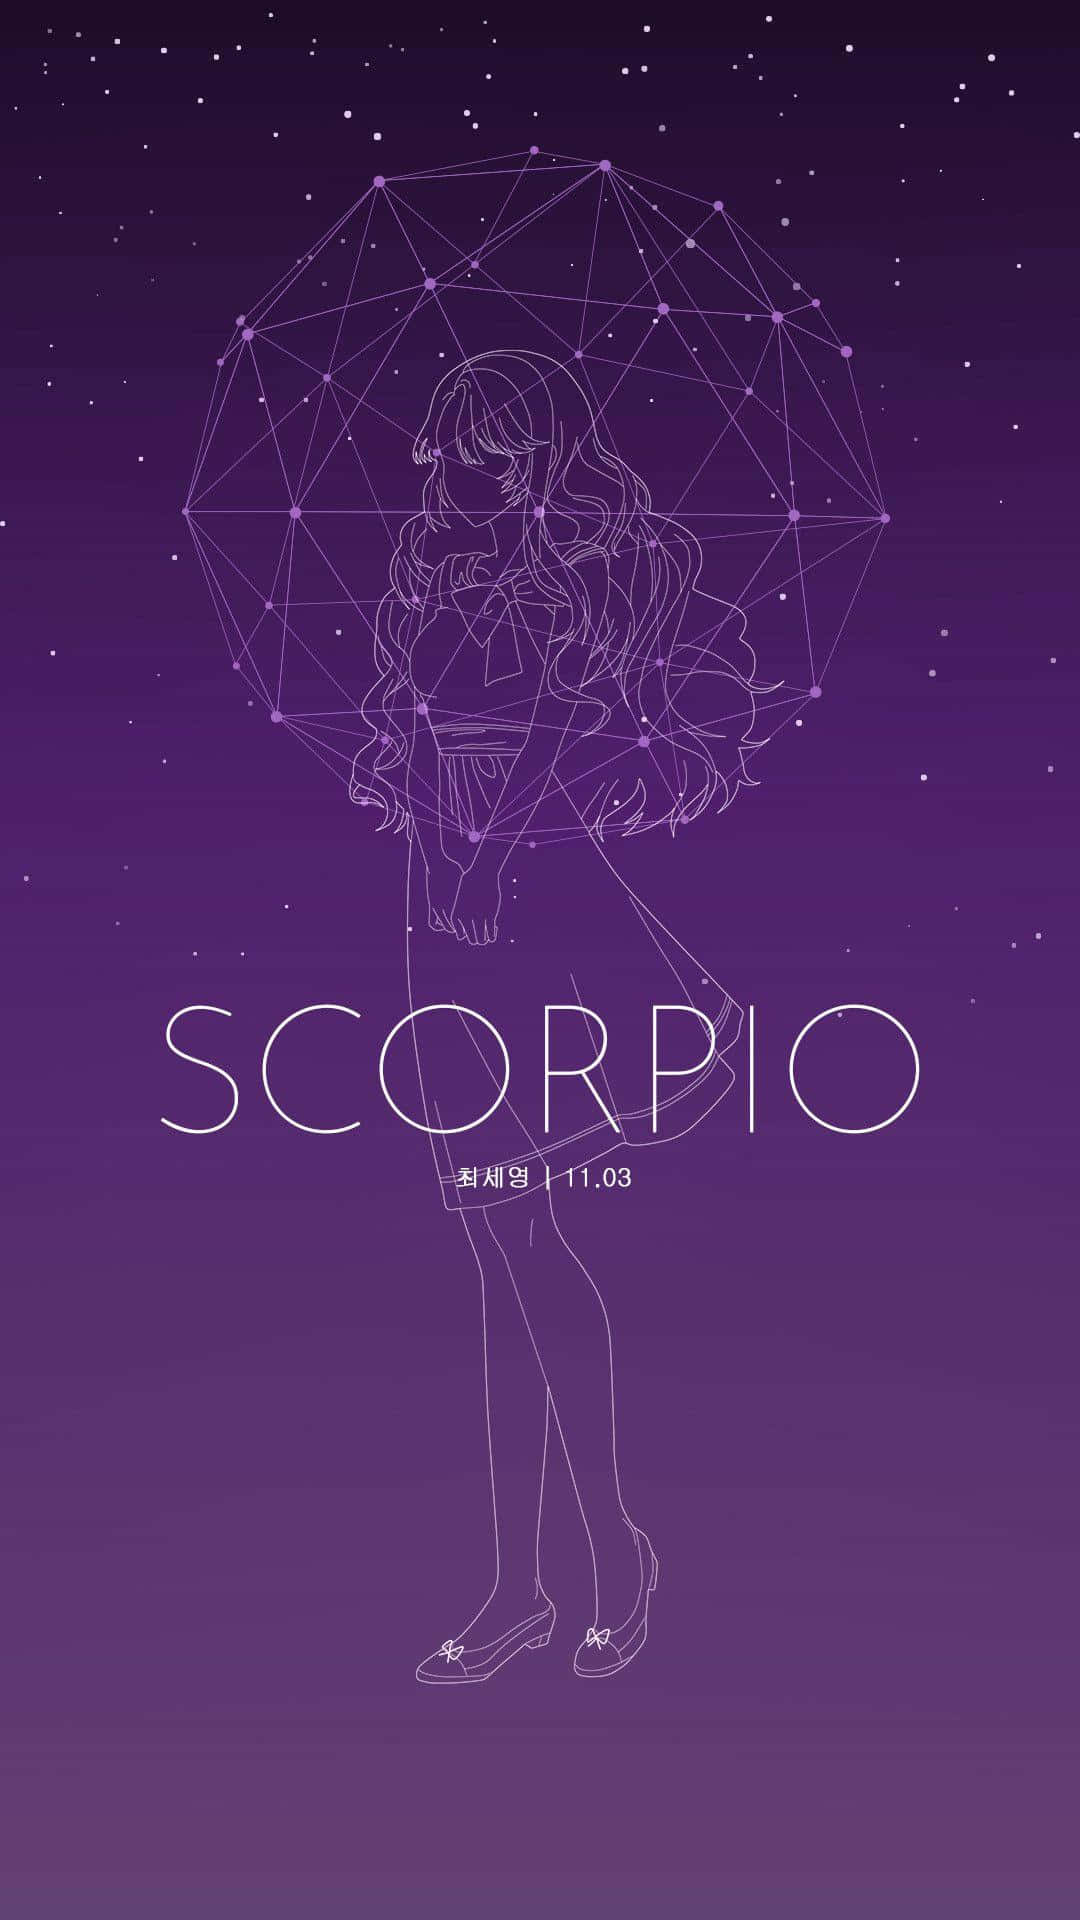 Scorpio - A Girl With An Umbrella